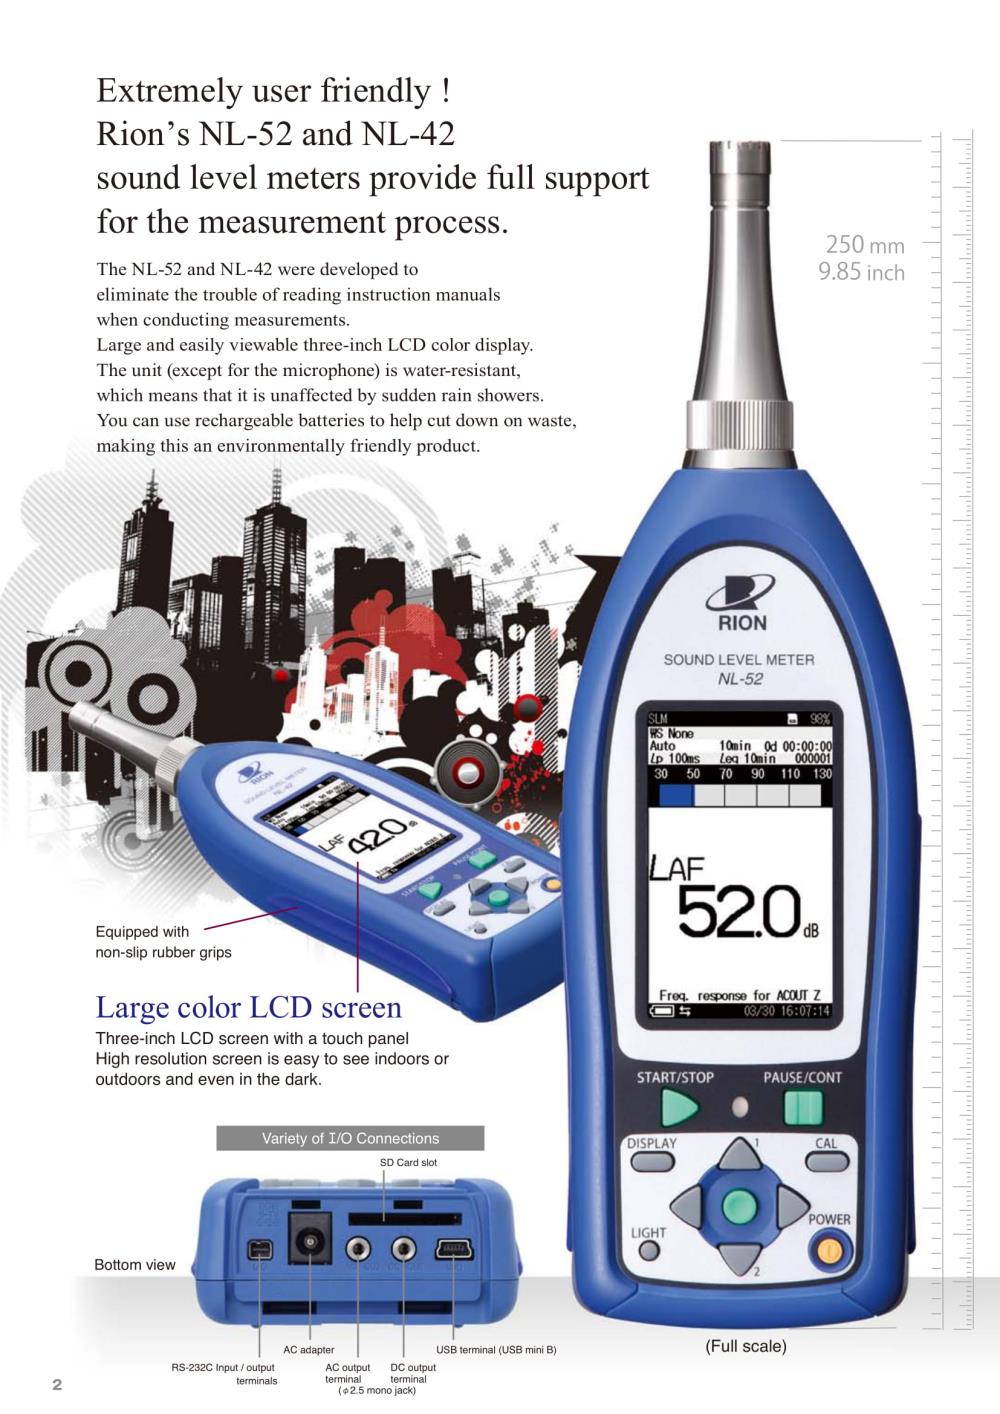 เครื่องวิเคราะห์เสียง NL-52  (Sounds Level Meter) มาตรฐาน Class I,เครื่องวิเคราะห์เสียง,Sounds Level Meter,RION,Instruments and Controls/Test Equipment